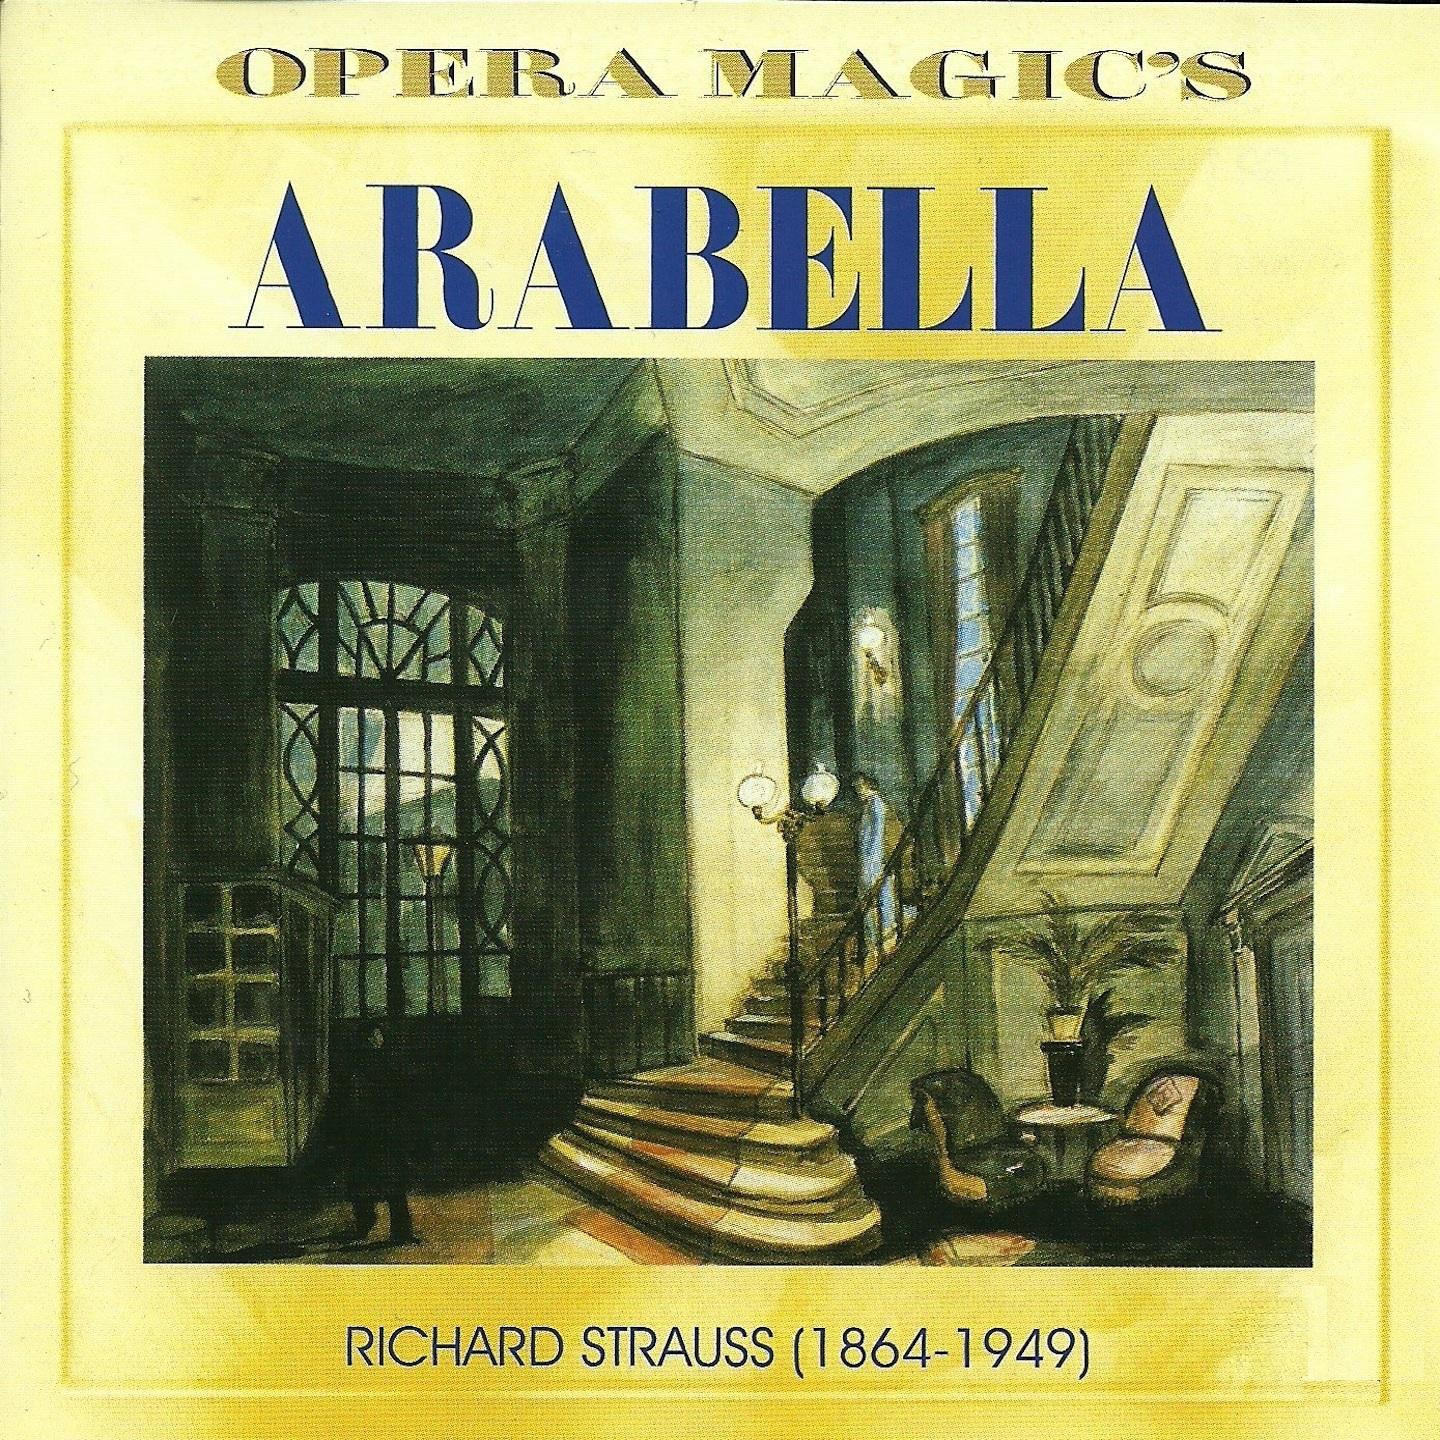 Arabella, Act II: " Arabella, Gibt Es Was Sch neres Als Sie Auf Einem Ball!" Lamoral, Arabella